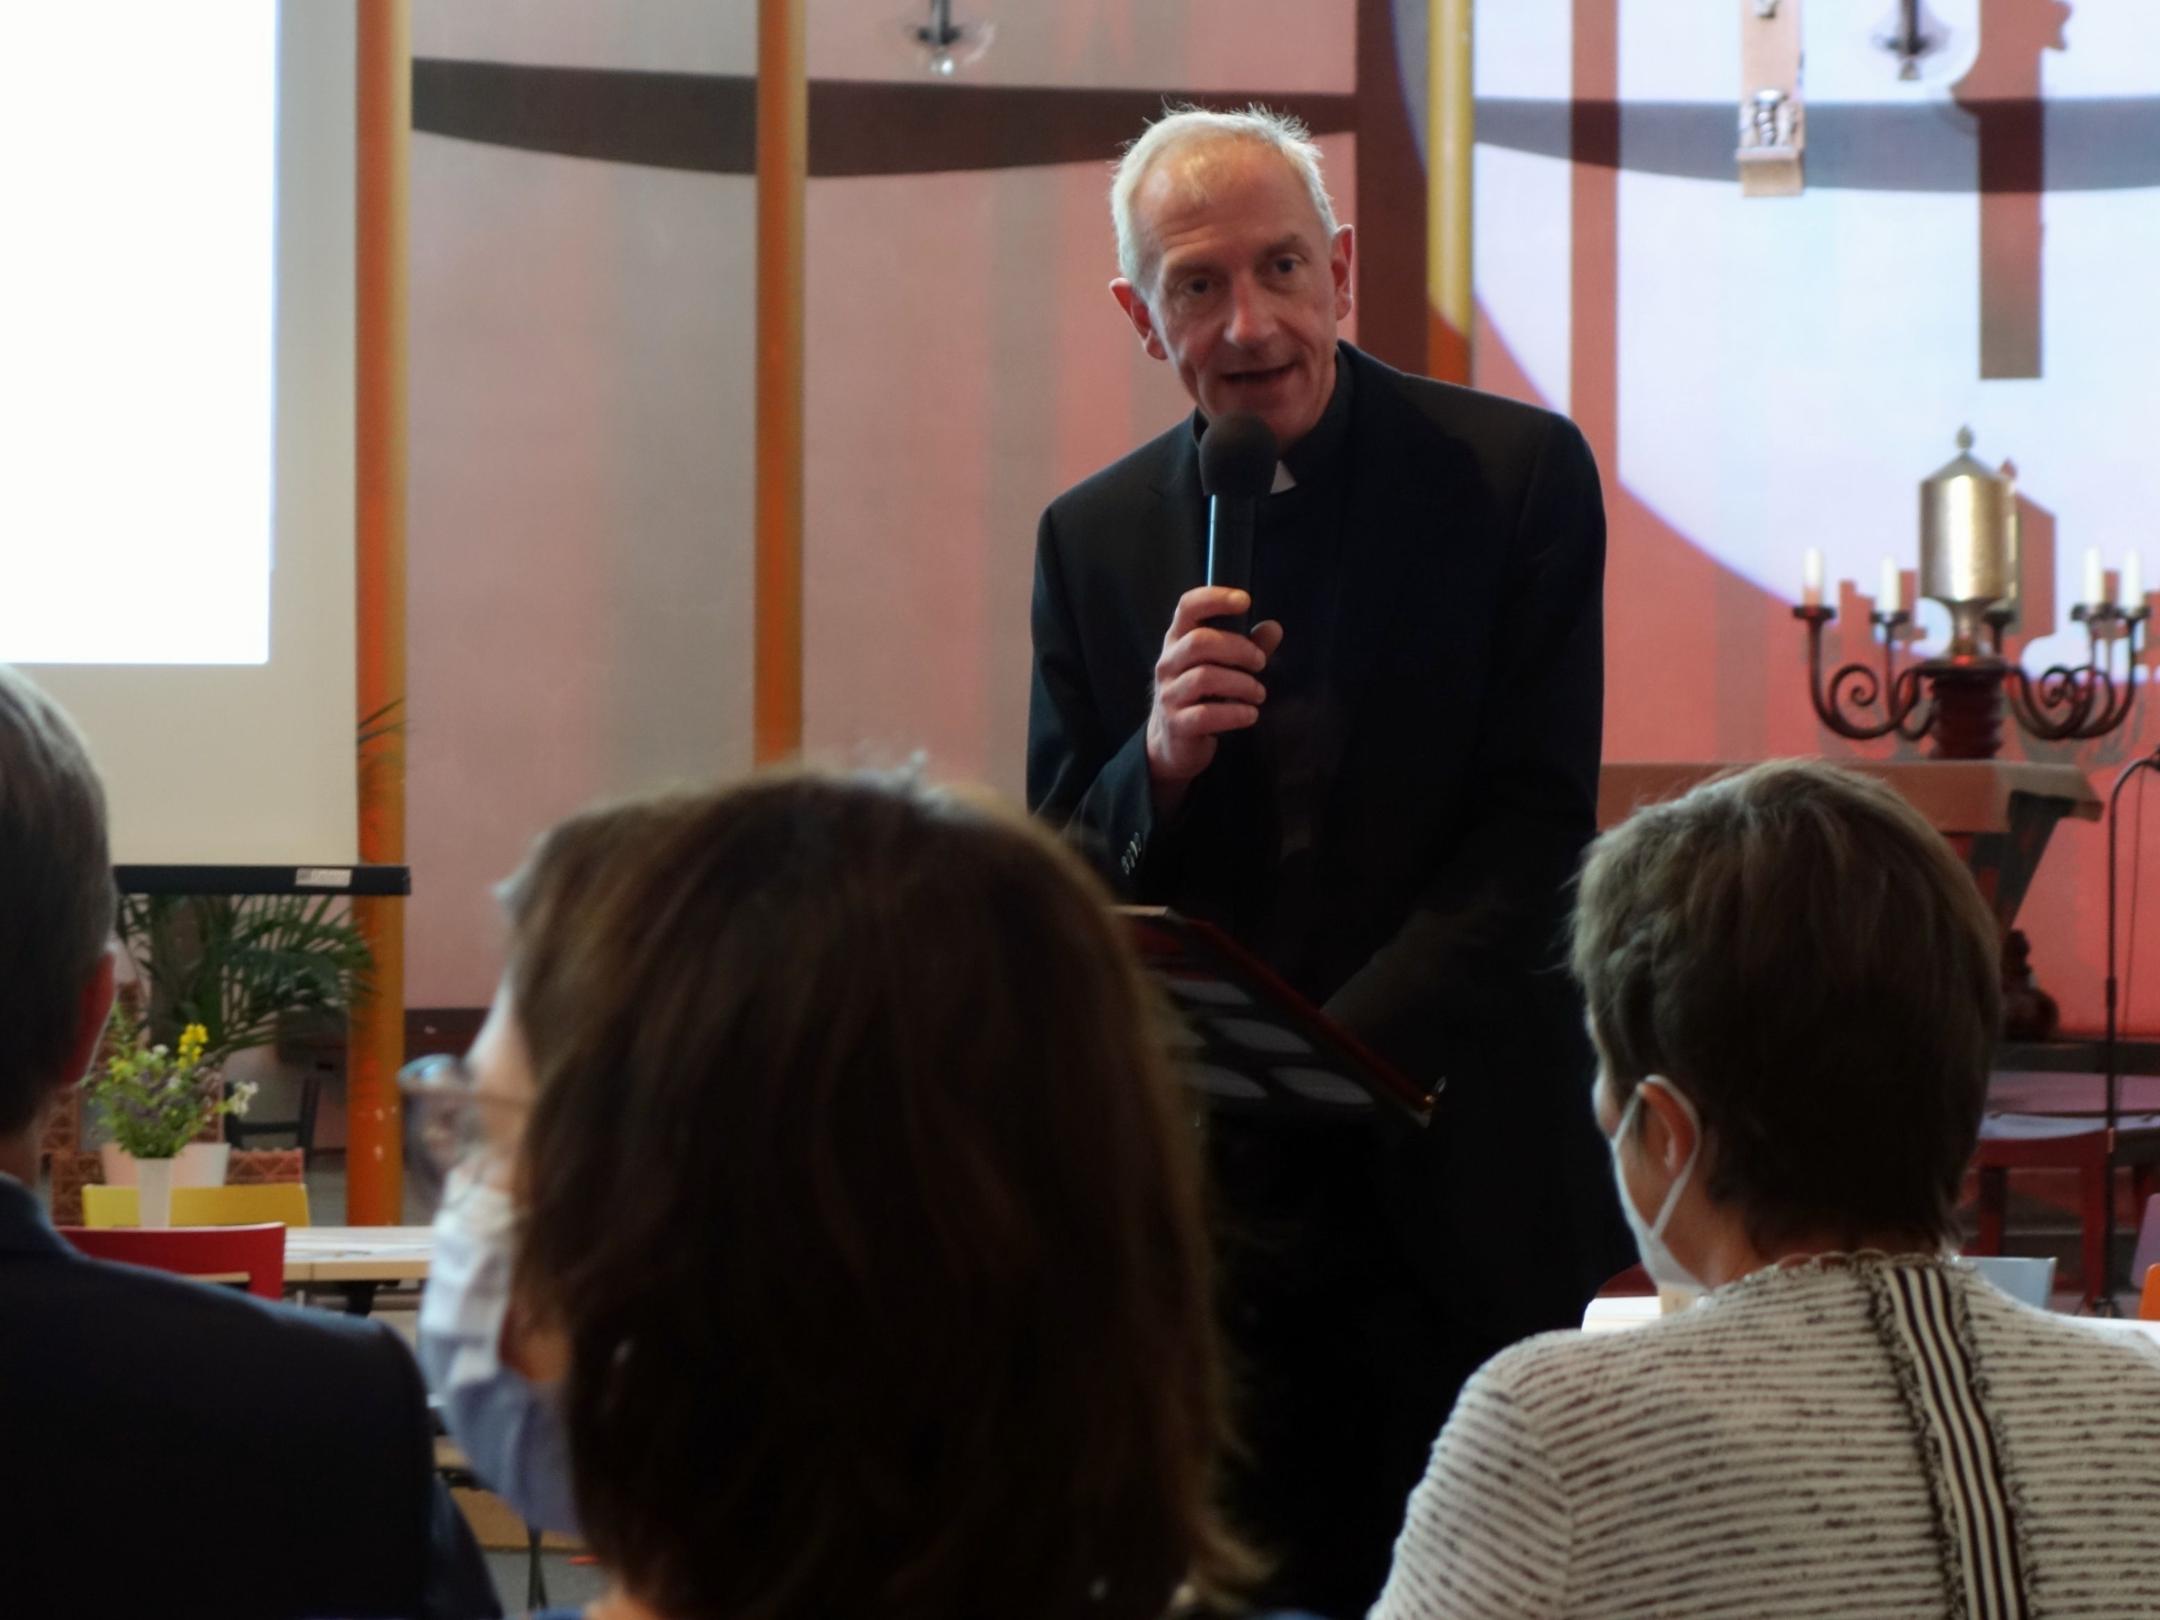 Domkapitular Benedikt Welter sprach als Vorsitzender des Diözesan-Caritasverbandes zu den Anwesenden (Foto: Julia Fröder/Bistum Trier)